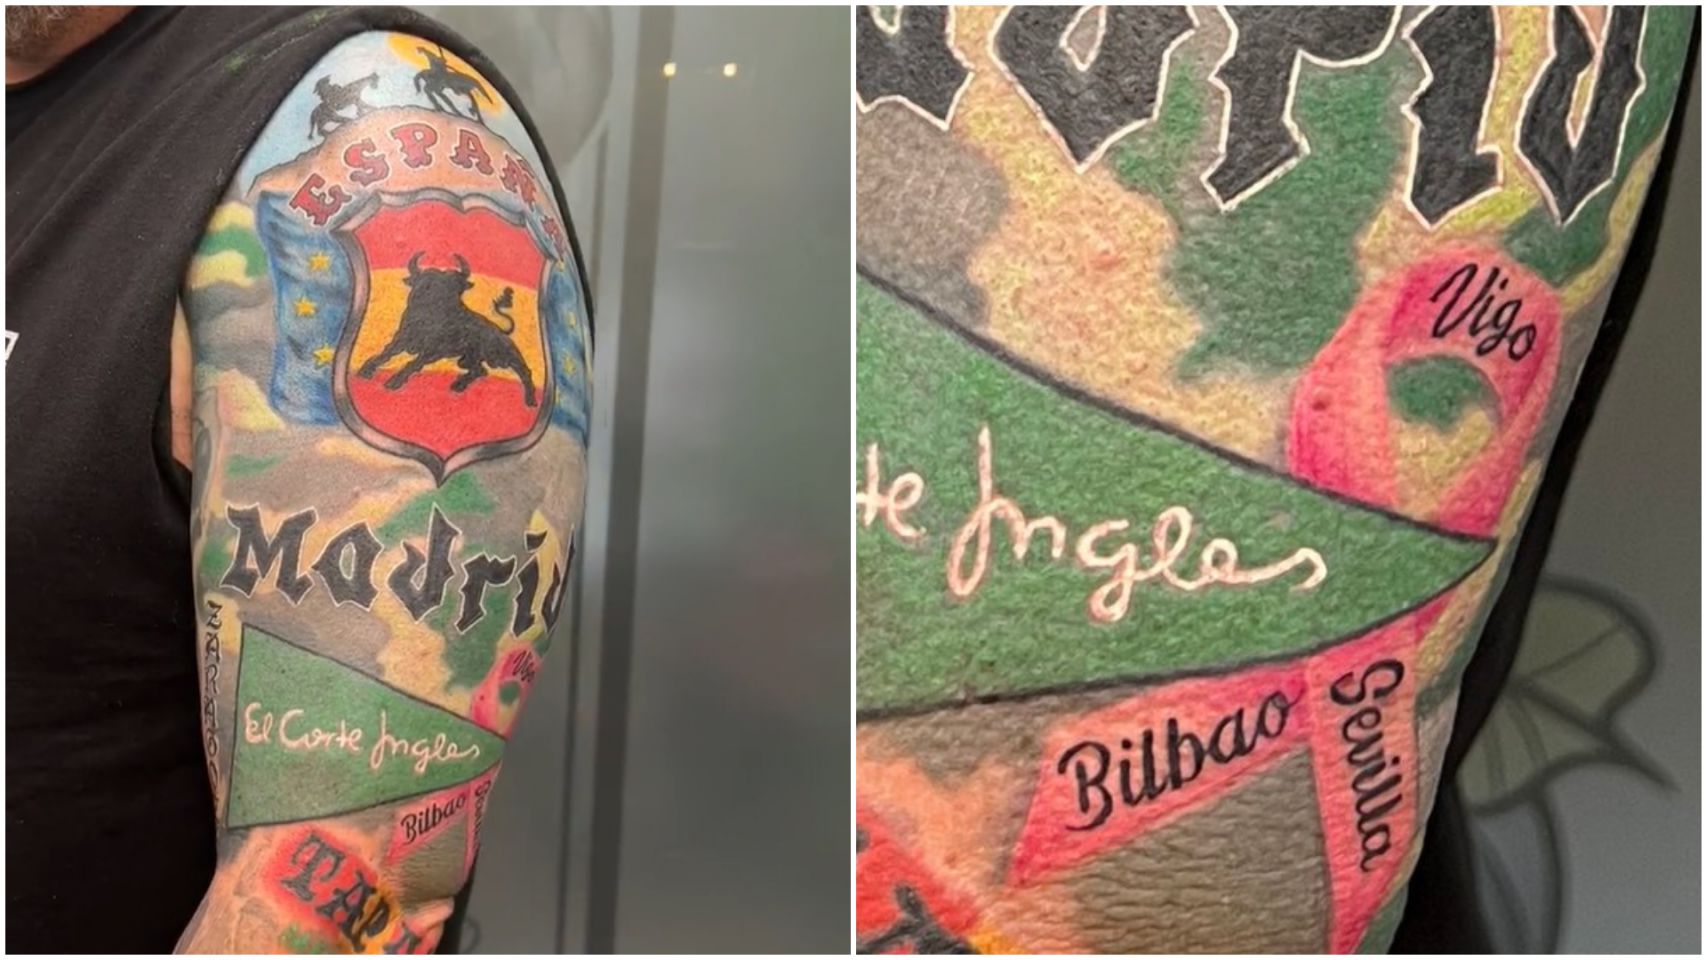 Imagen del brazo tatuado de Larry Shy, con el detalle de "Vigo" sobre un lazo rosa.